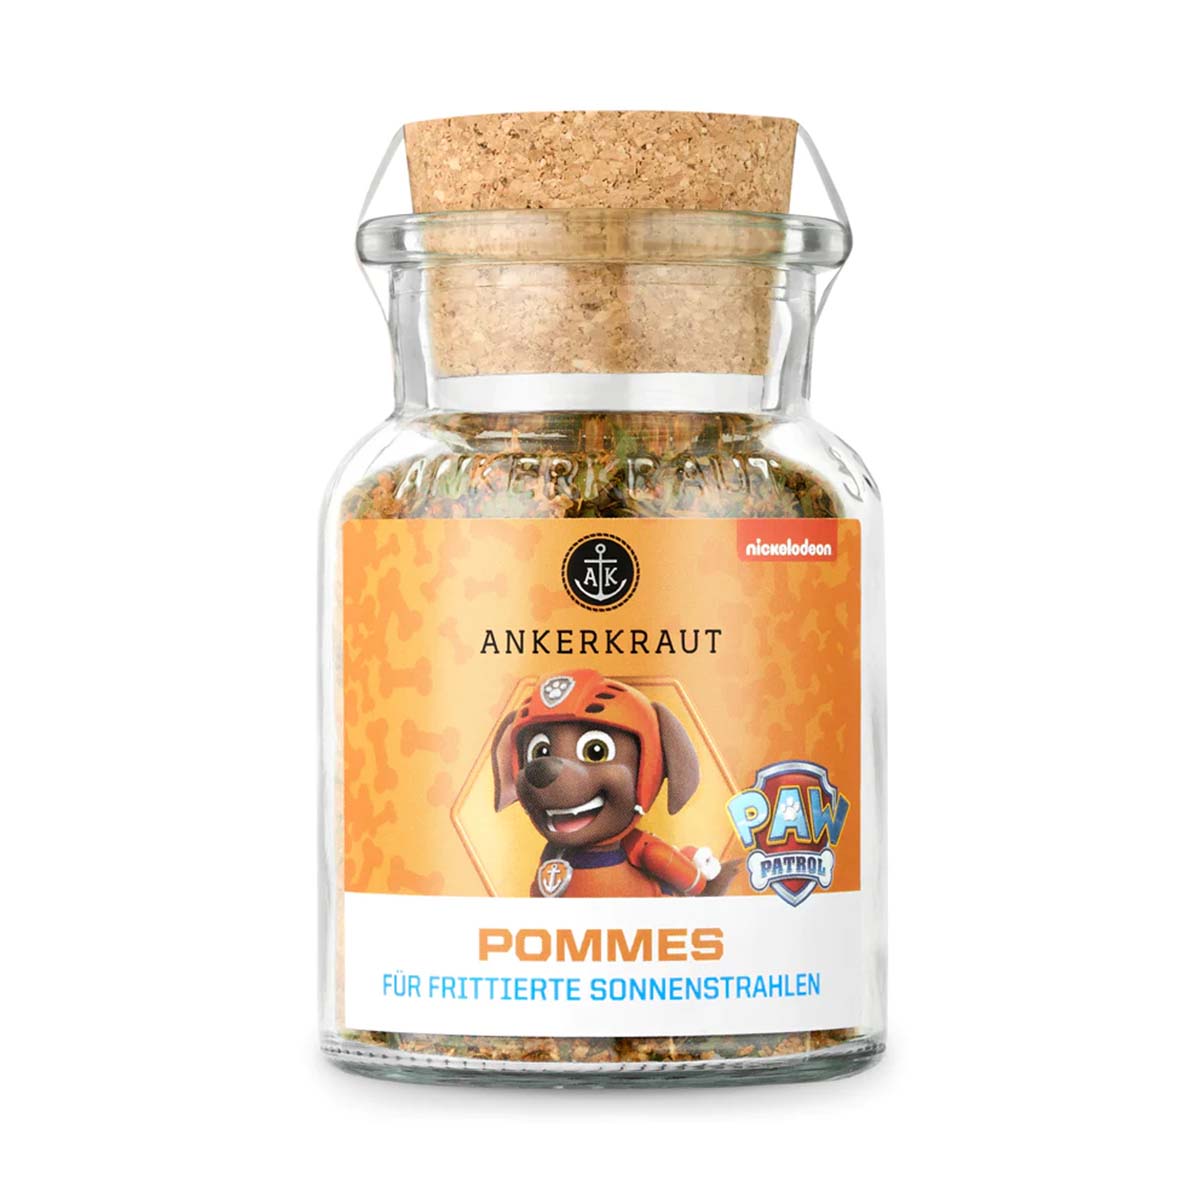 AK Pommes Frites Salz (Paw Patrol: Zuma) 130 g